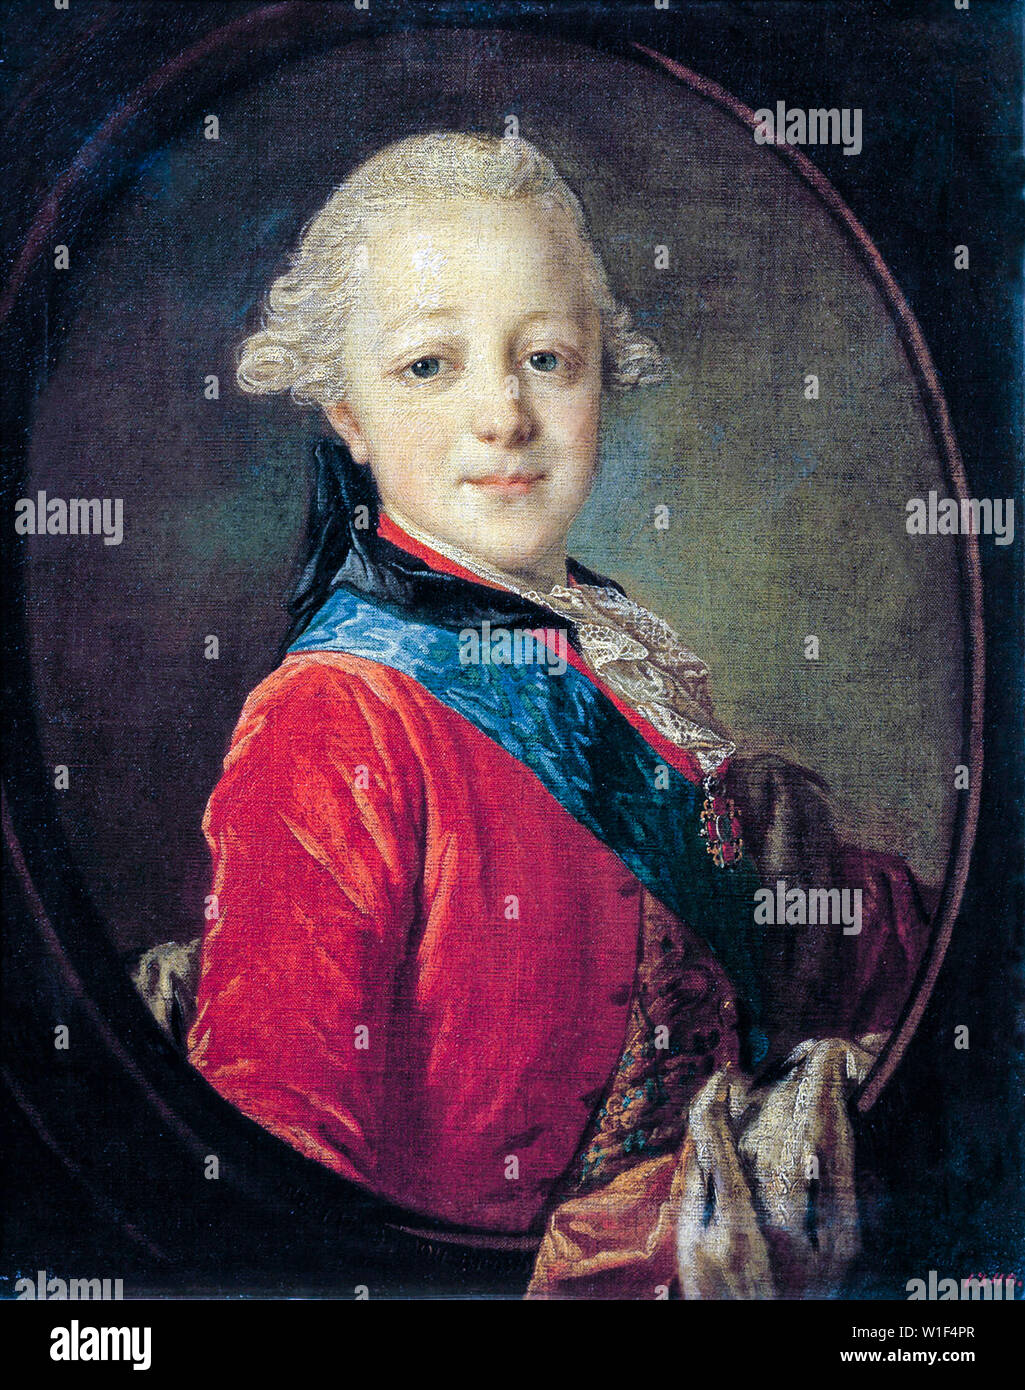 L'empereur Paul I de Russie (1754-1801) comme enfant, portrait peint par Fyodor Rokotov, 1761 Banque D'Images